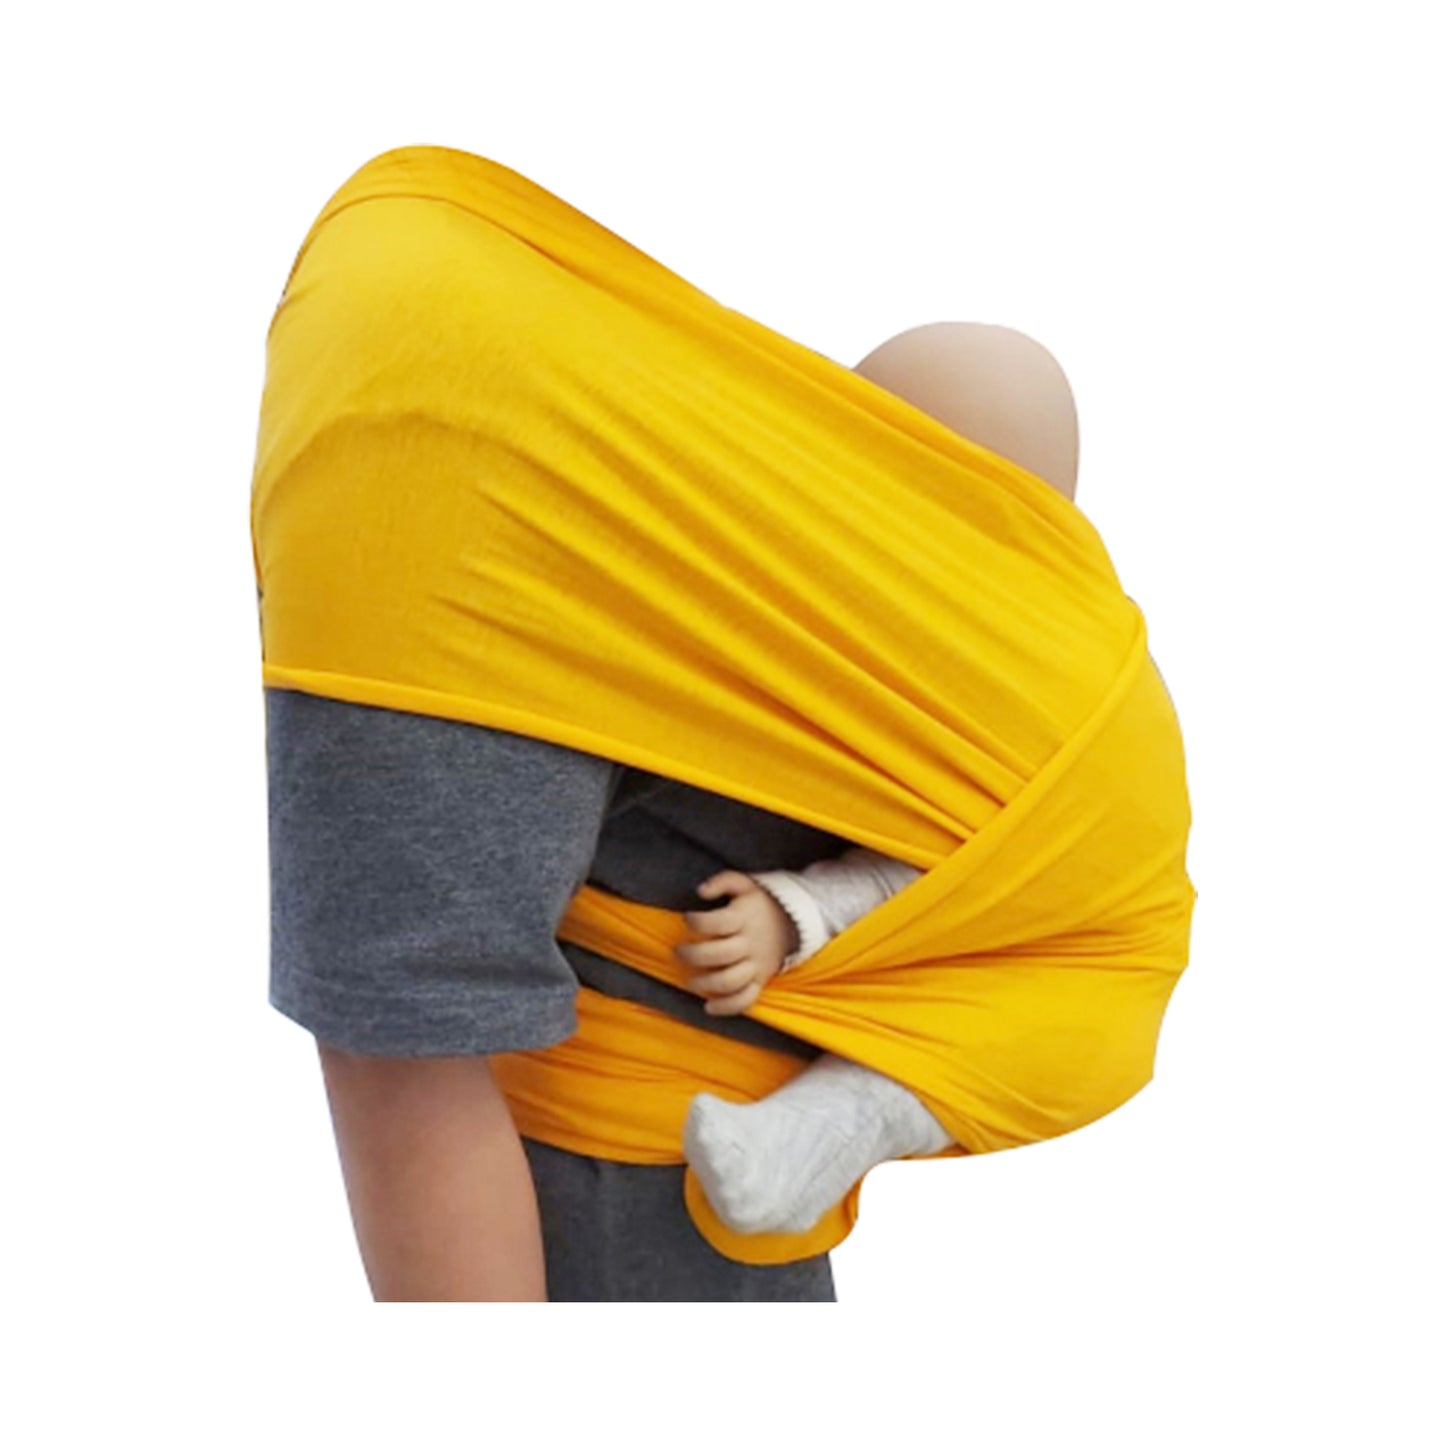 嬰兒配飾 - 橙黃色背帶